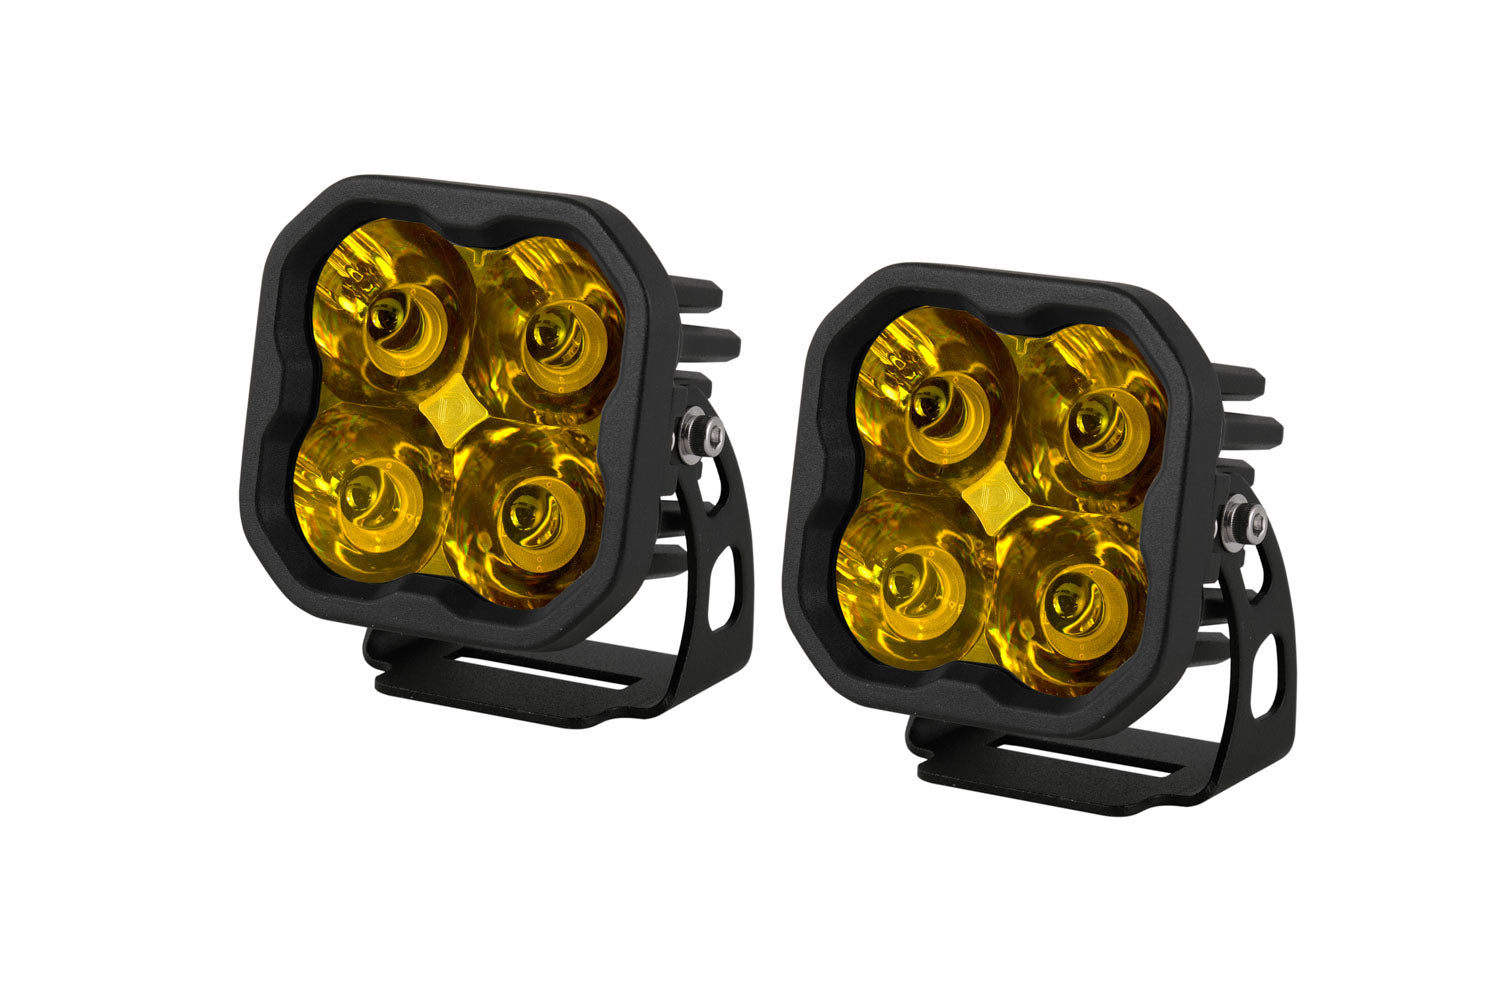 Diode Dynamics SS3 Sport Backlit LED Pod Lights